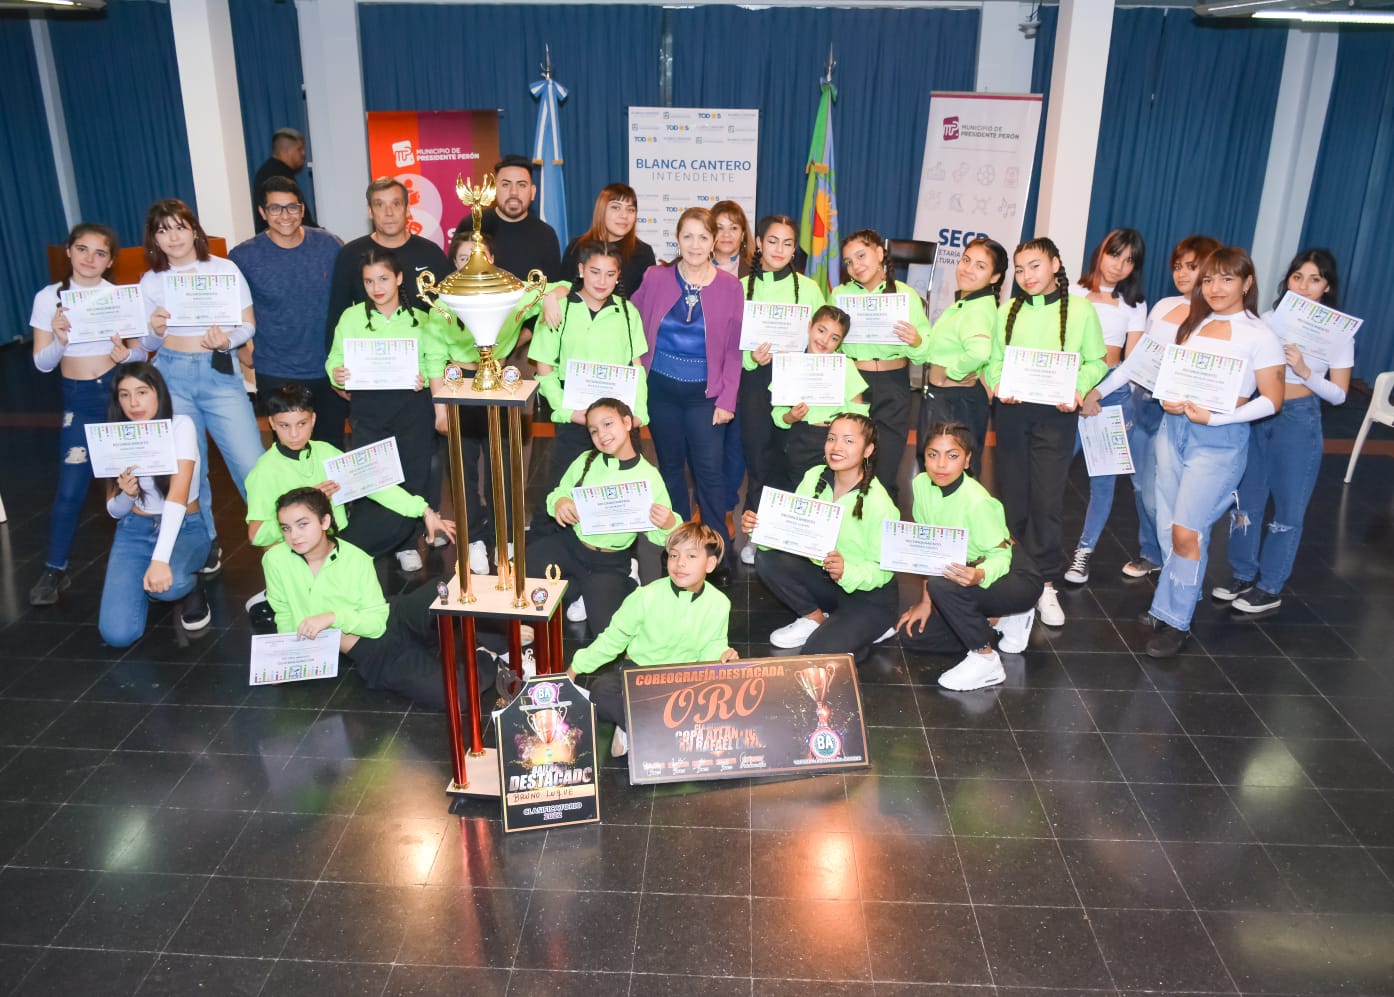 ARTÍSTICA /  La intendente Blanca Cantero distinguió a grupos de baile que competirán por el título nacional